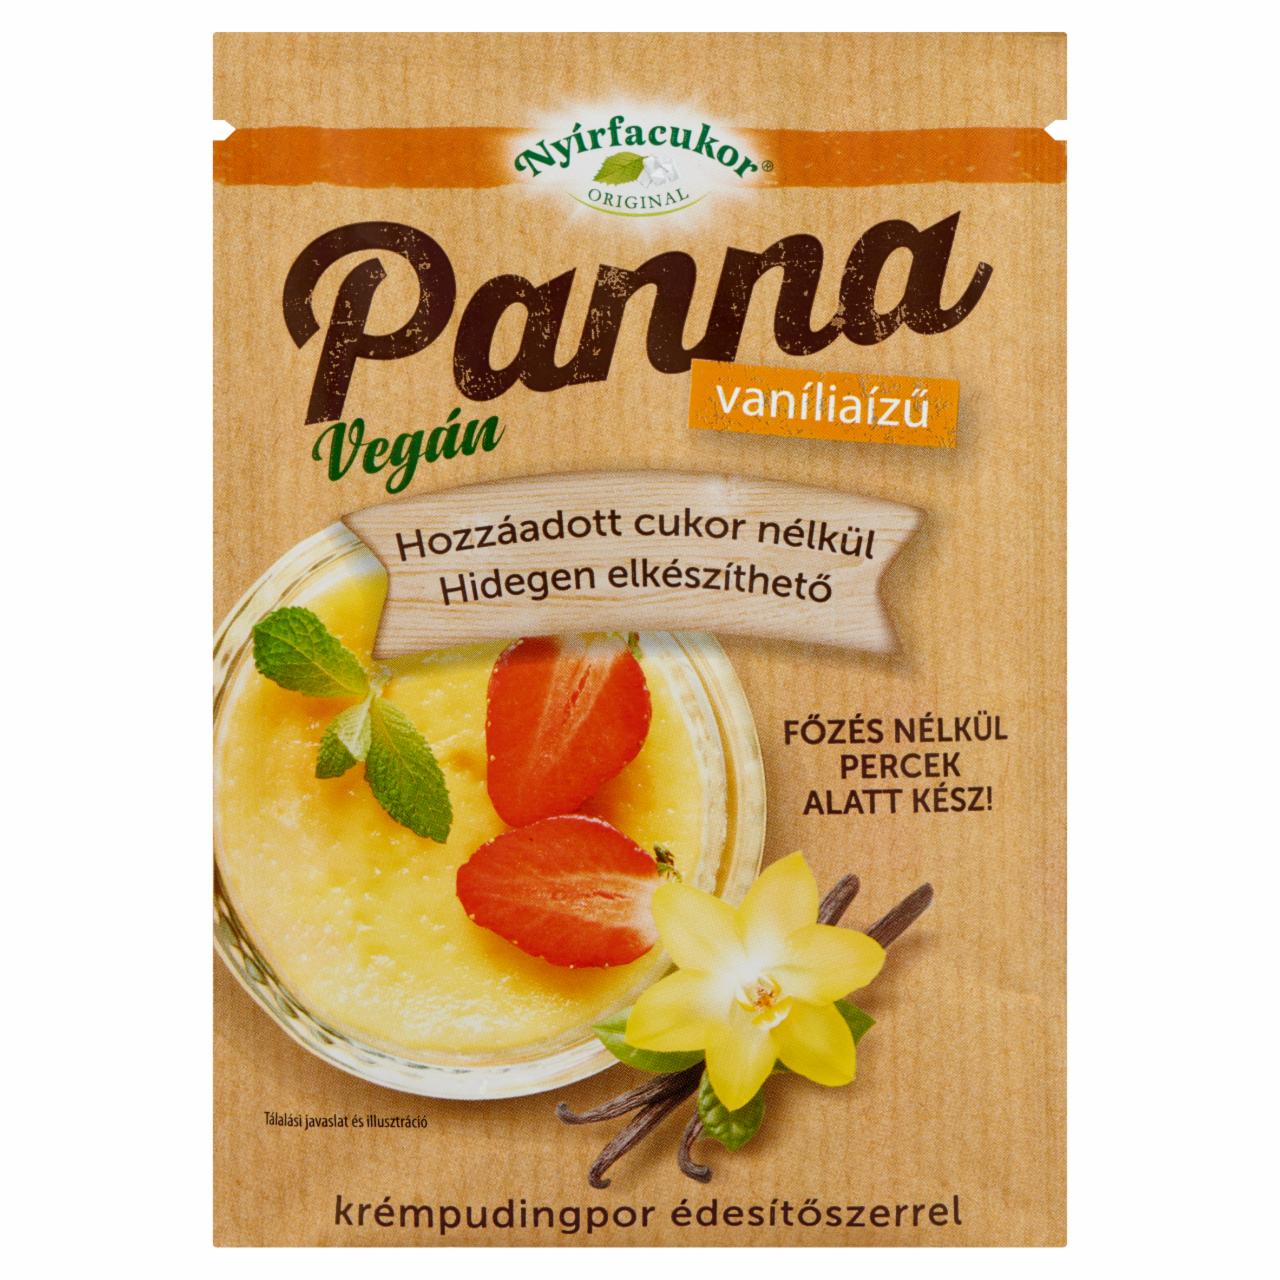 Képek - Nyírfacukor Panna vaníliaízű krémpudingpor édesítőszerrel 50 g